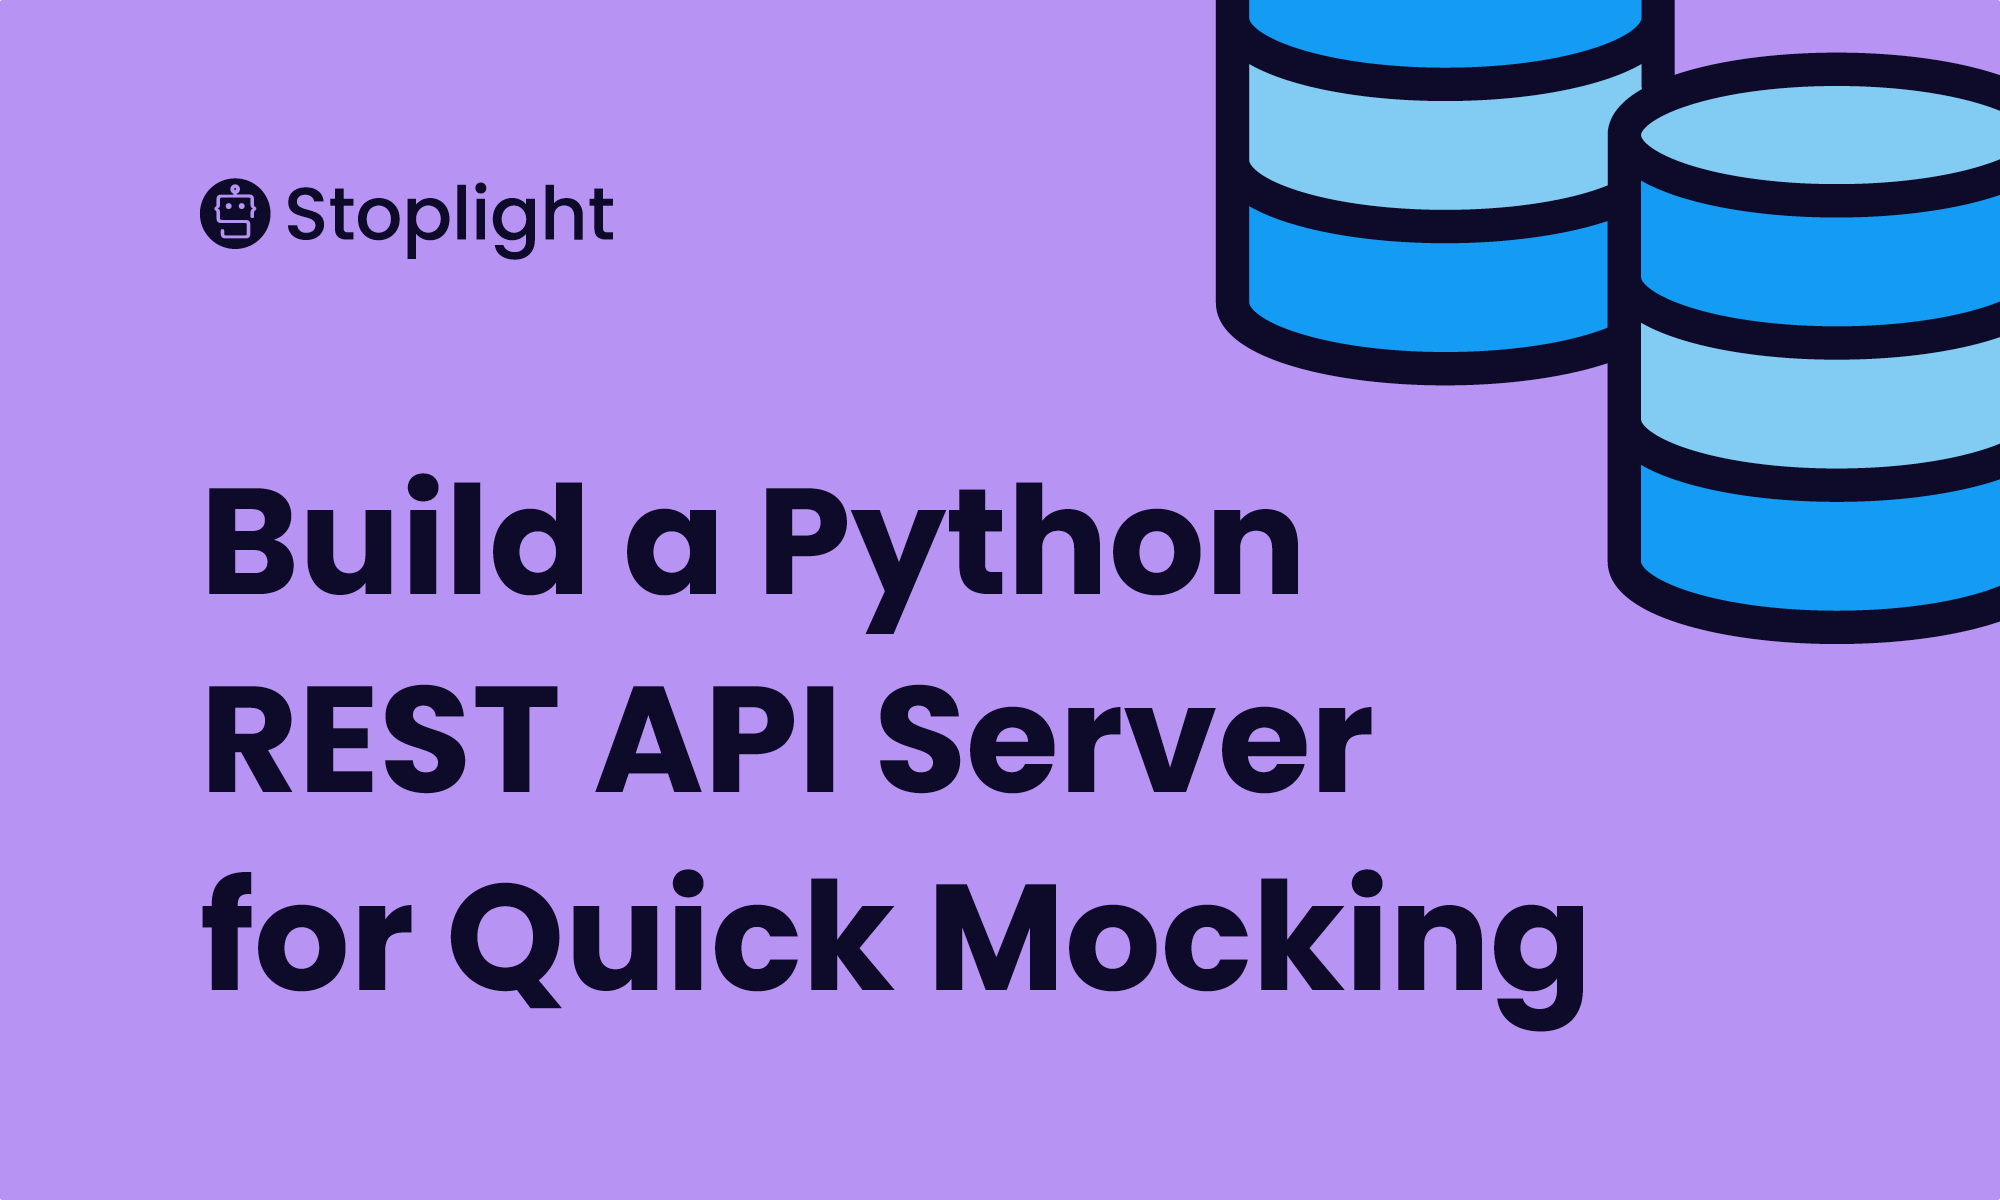 How to Build a Python REST API Server for Quick Mocking